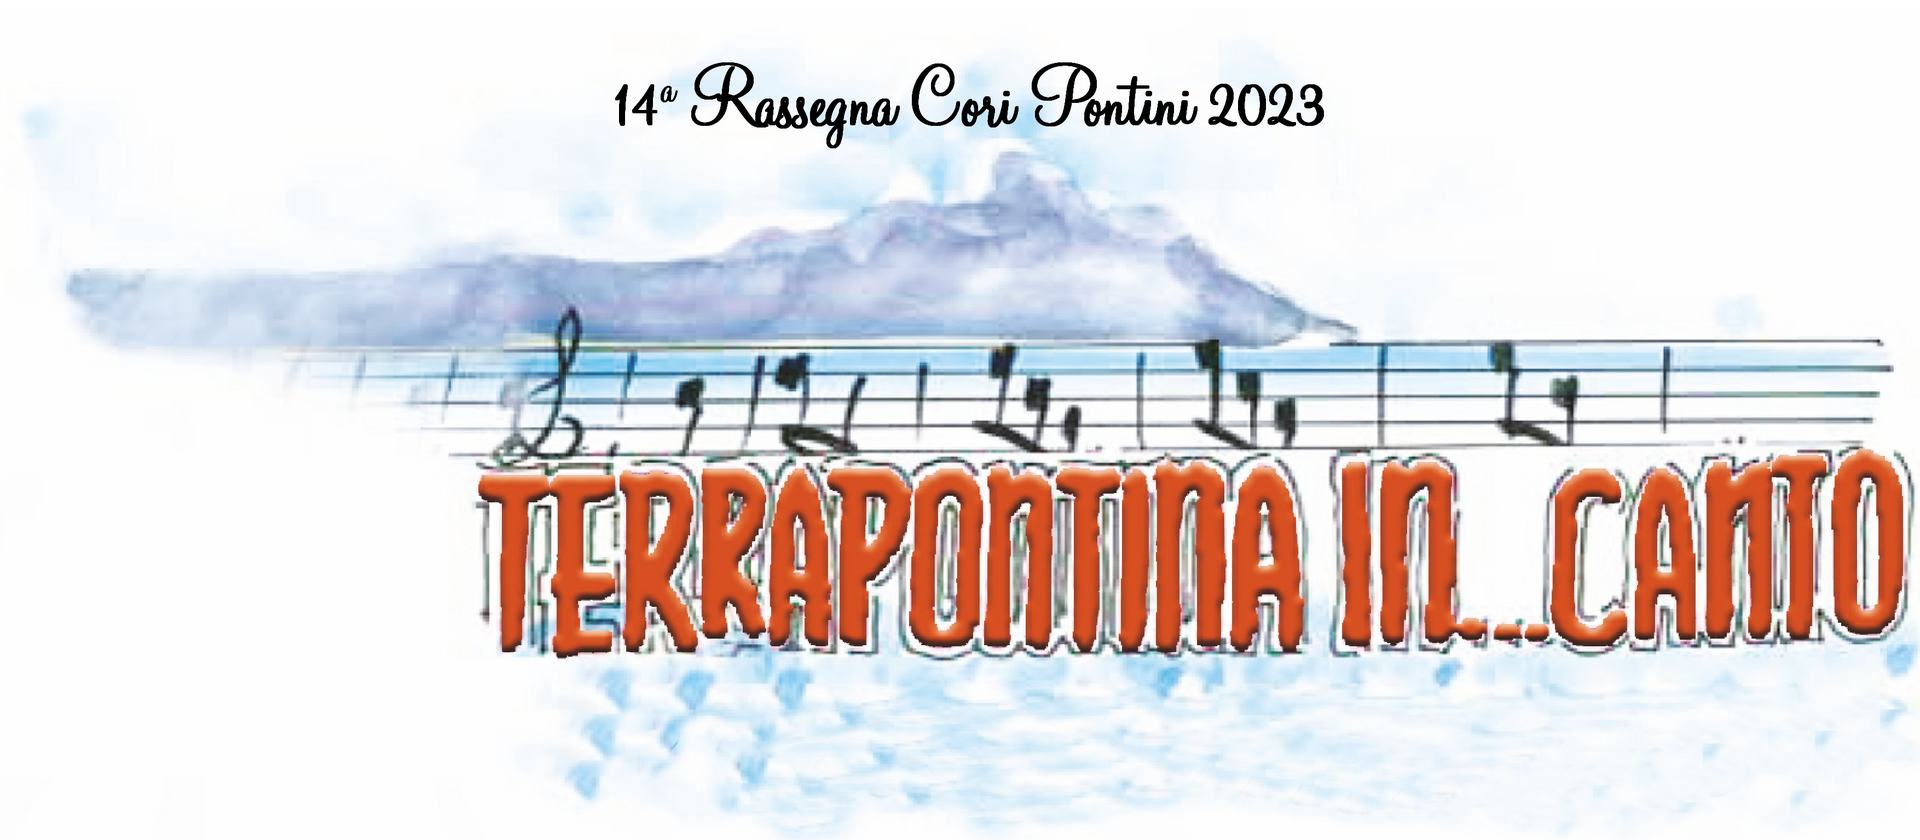 Terrapontina 2023-2